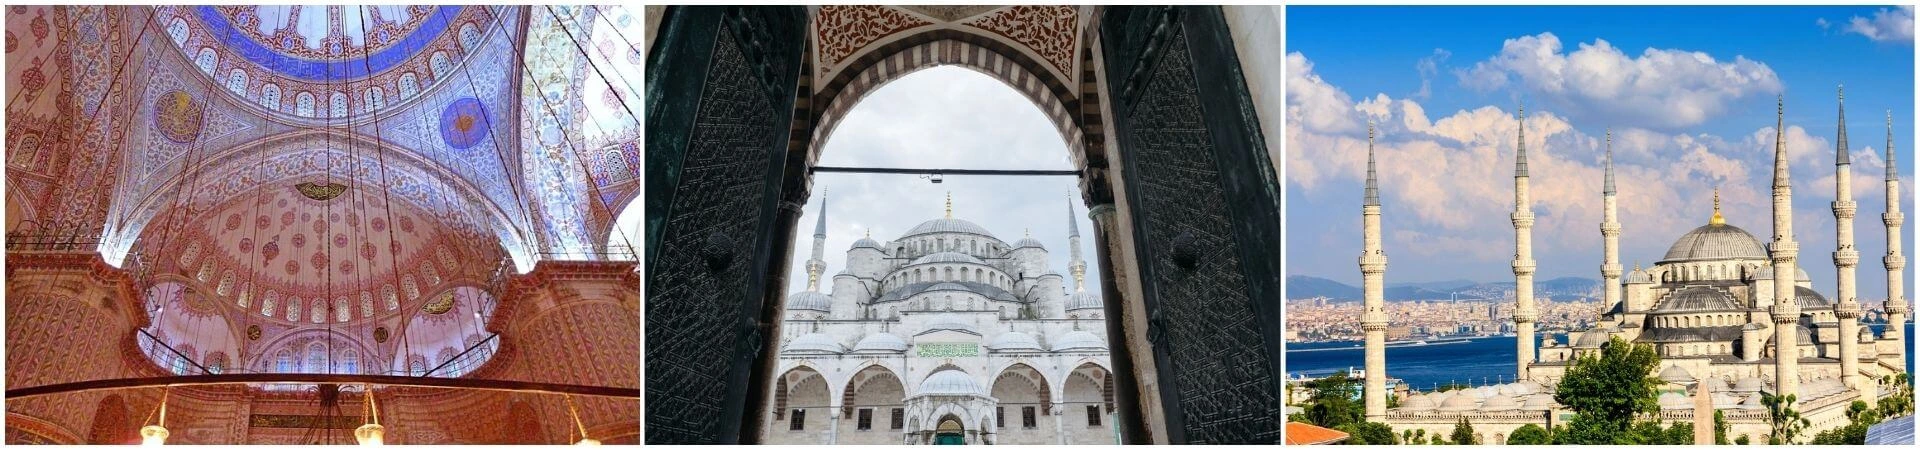 جولة إرشادية في المسجد الأزرق في اسطنبول